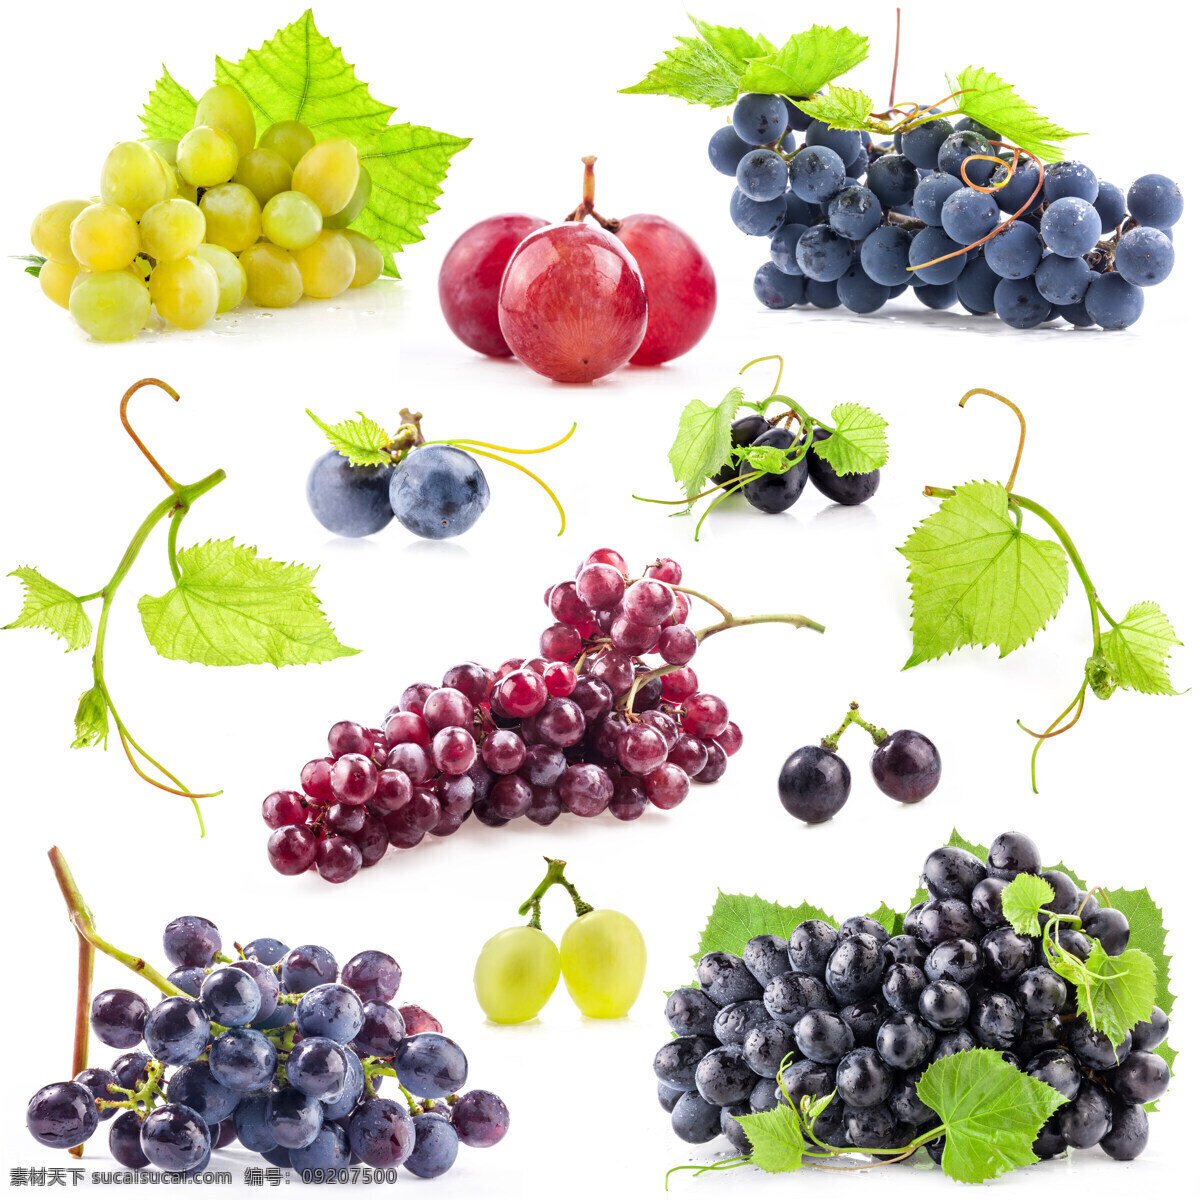 各种 品种 葡萄 提子 水果 新鲜水果 食物 餐厅美食 水果摄影 蔬菜图片 餐饮美食